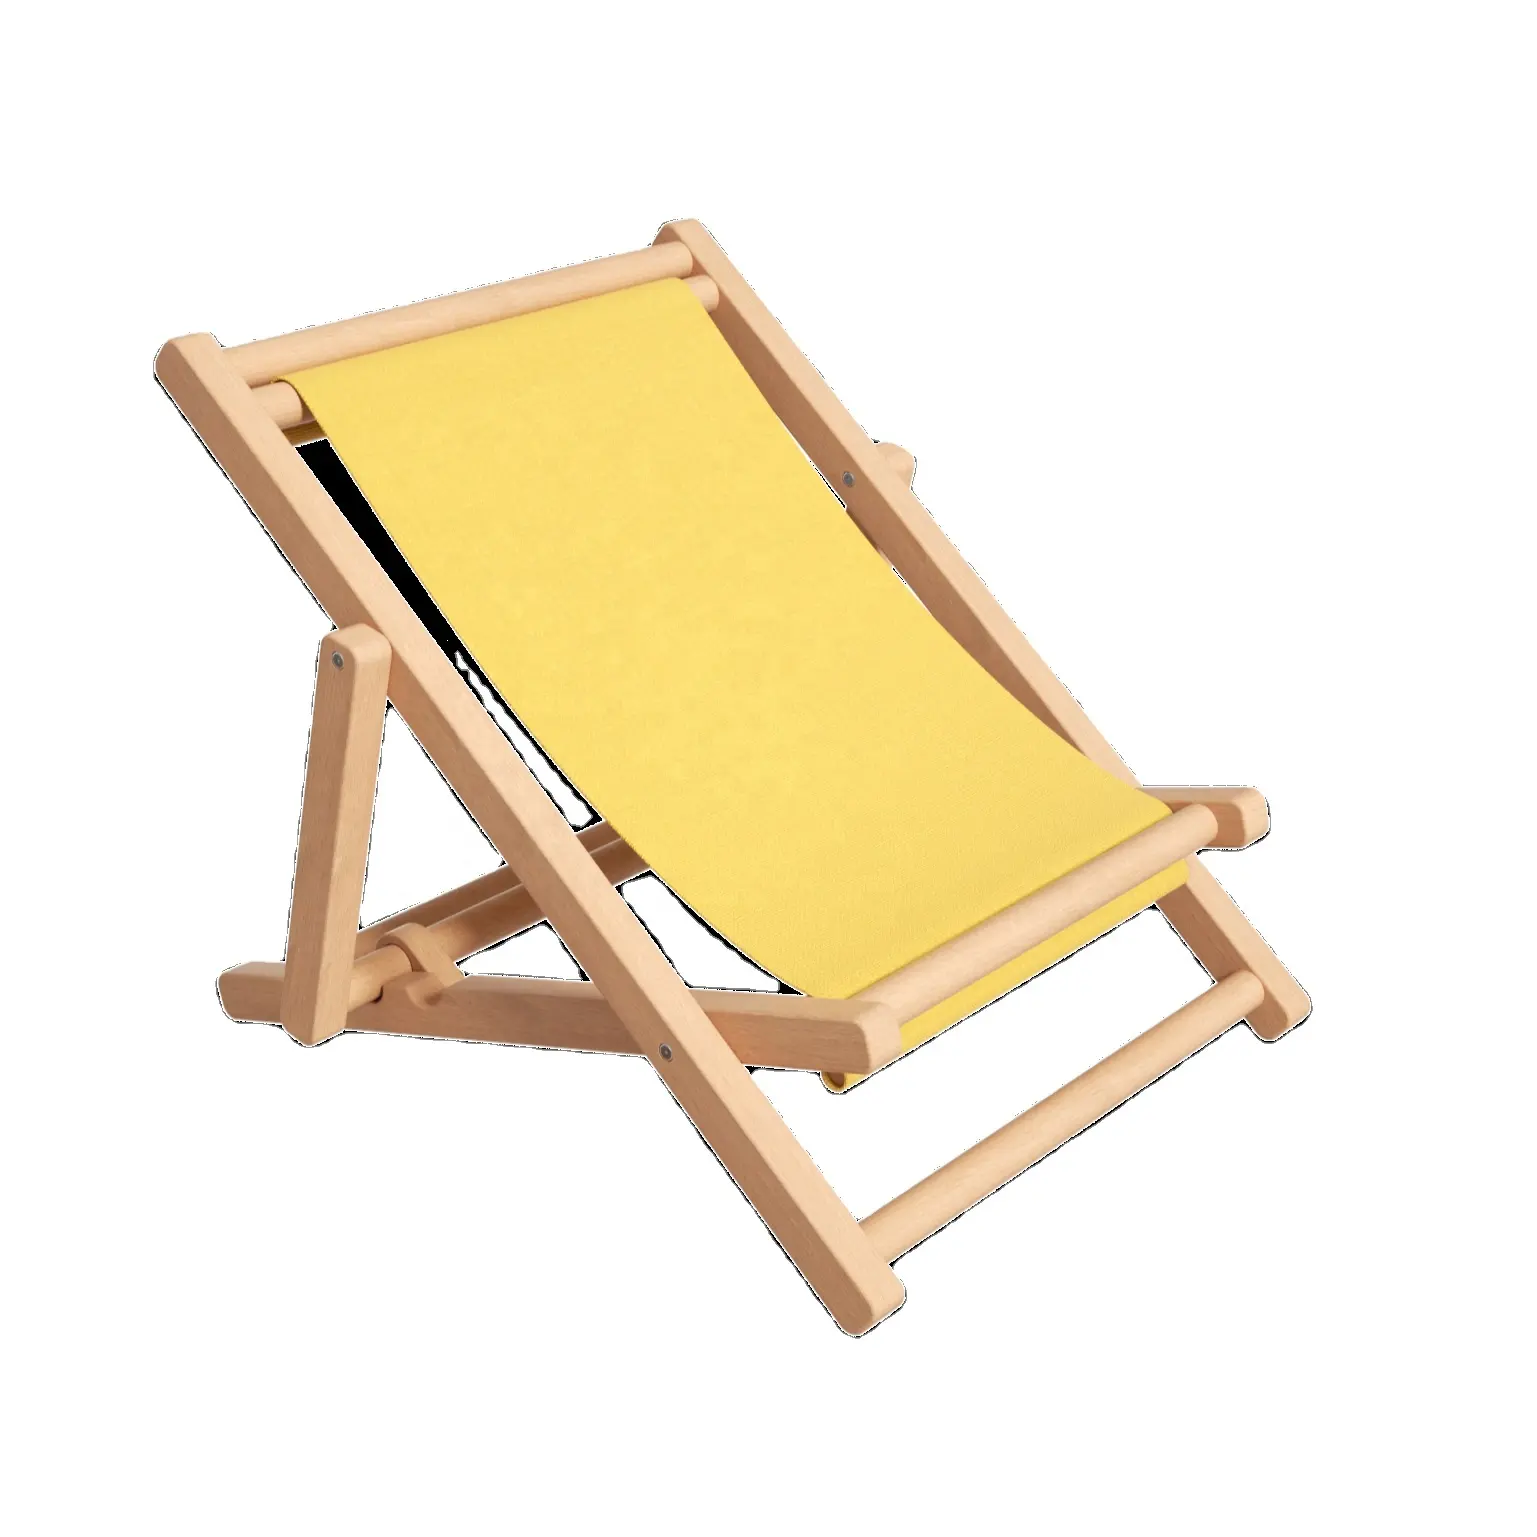 Sillas de mar de alta calidad Fábrica al por mayor plegable de madera portátil plegable reclinable playa camping conjunto niños tumbona para niña